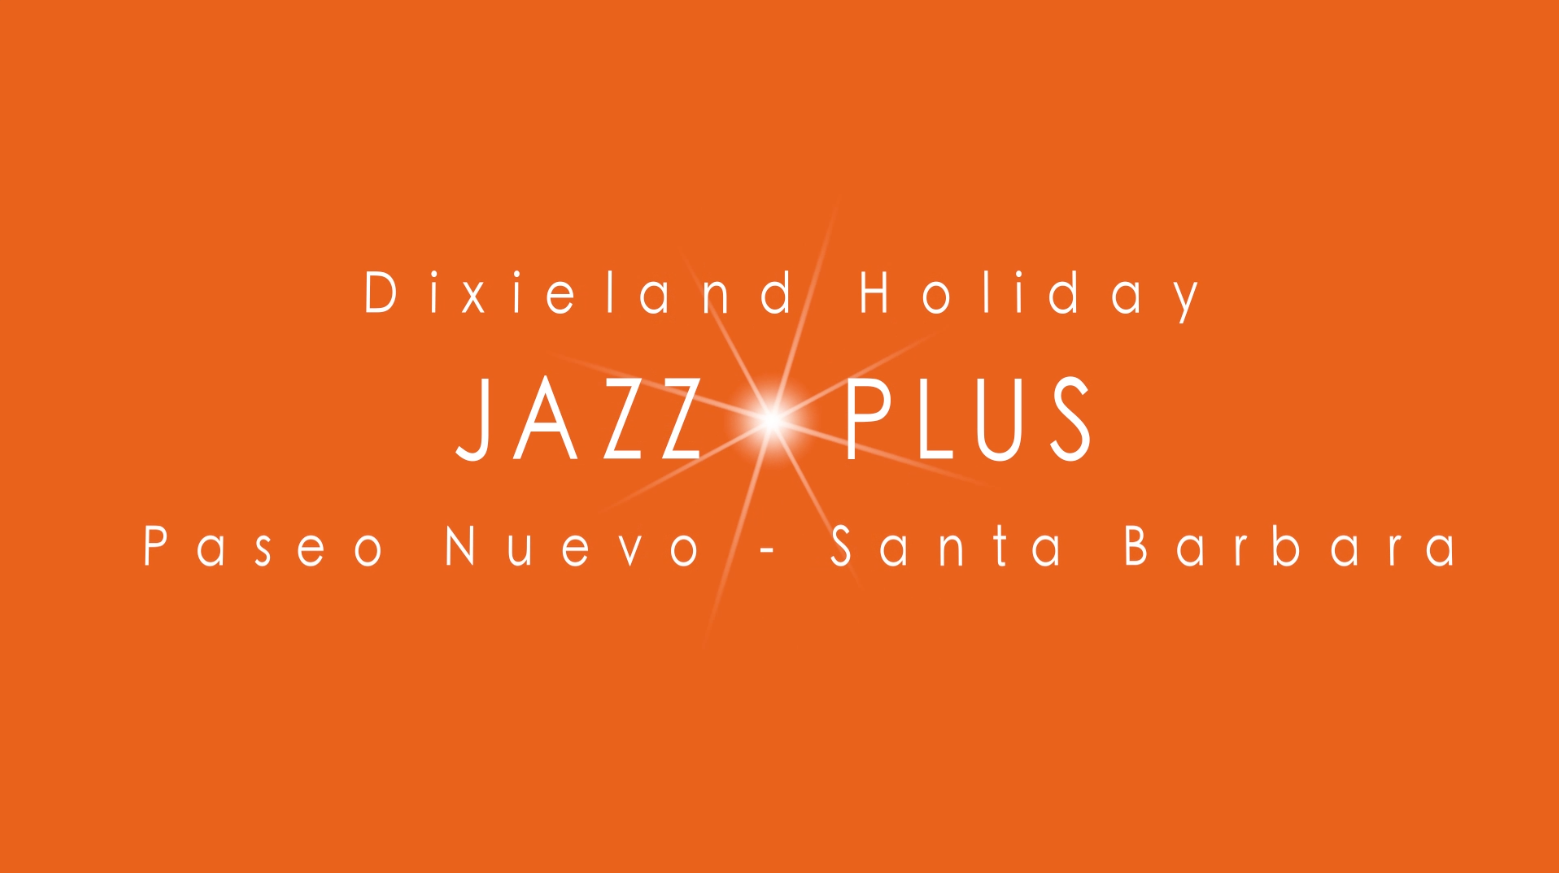 Dixieland Holiday Jazz Plus filmed by 805 productions Santa Barbara